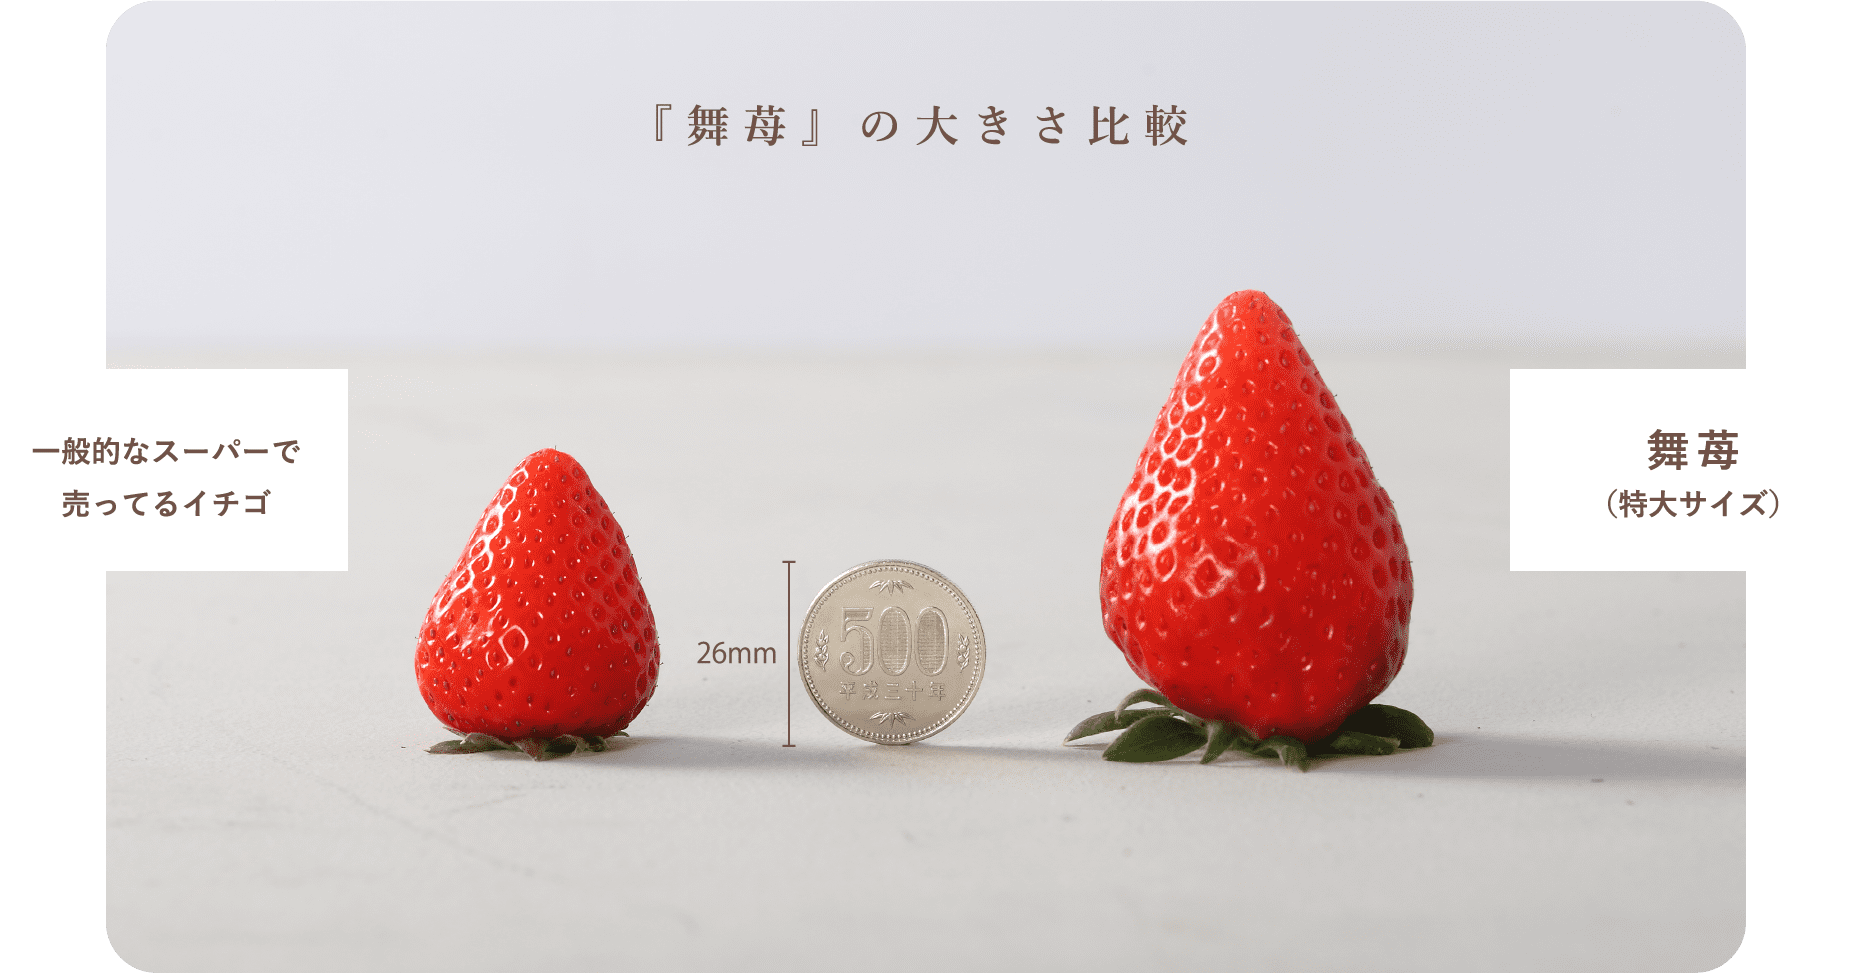 『舞苺』の大きさを比較